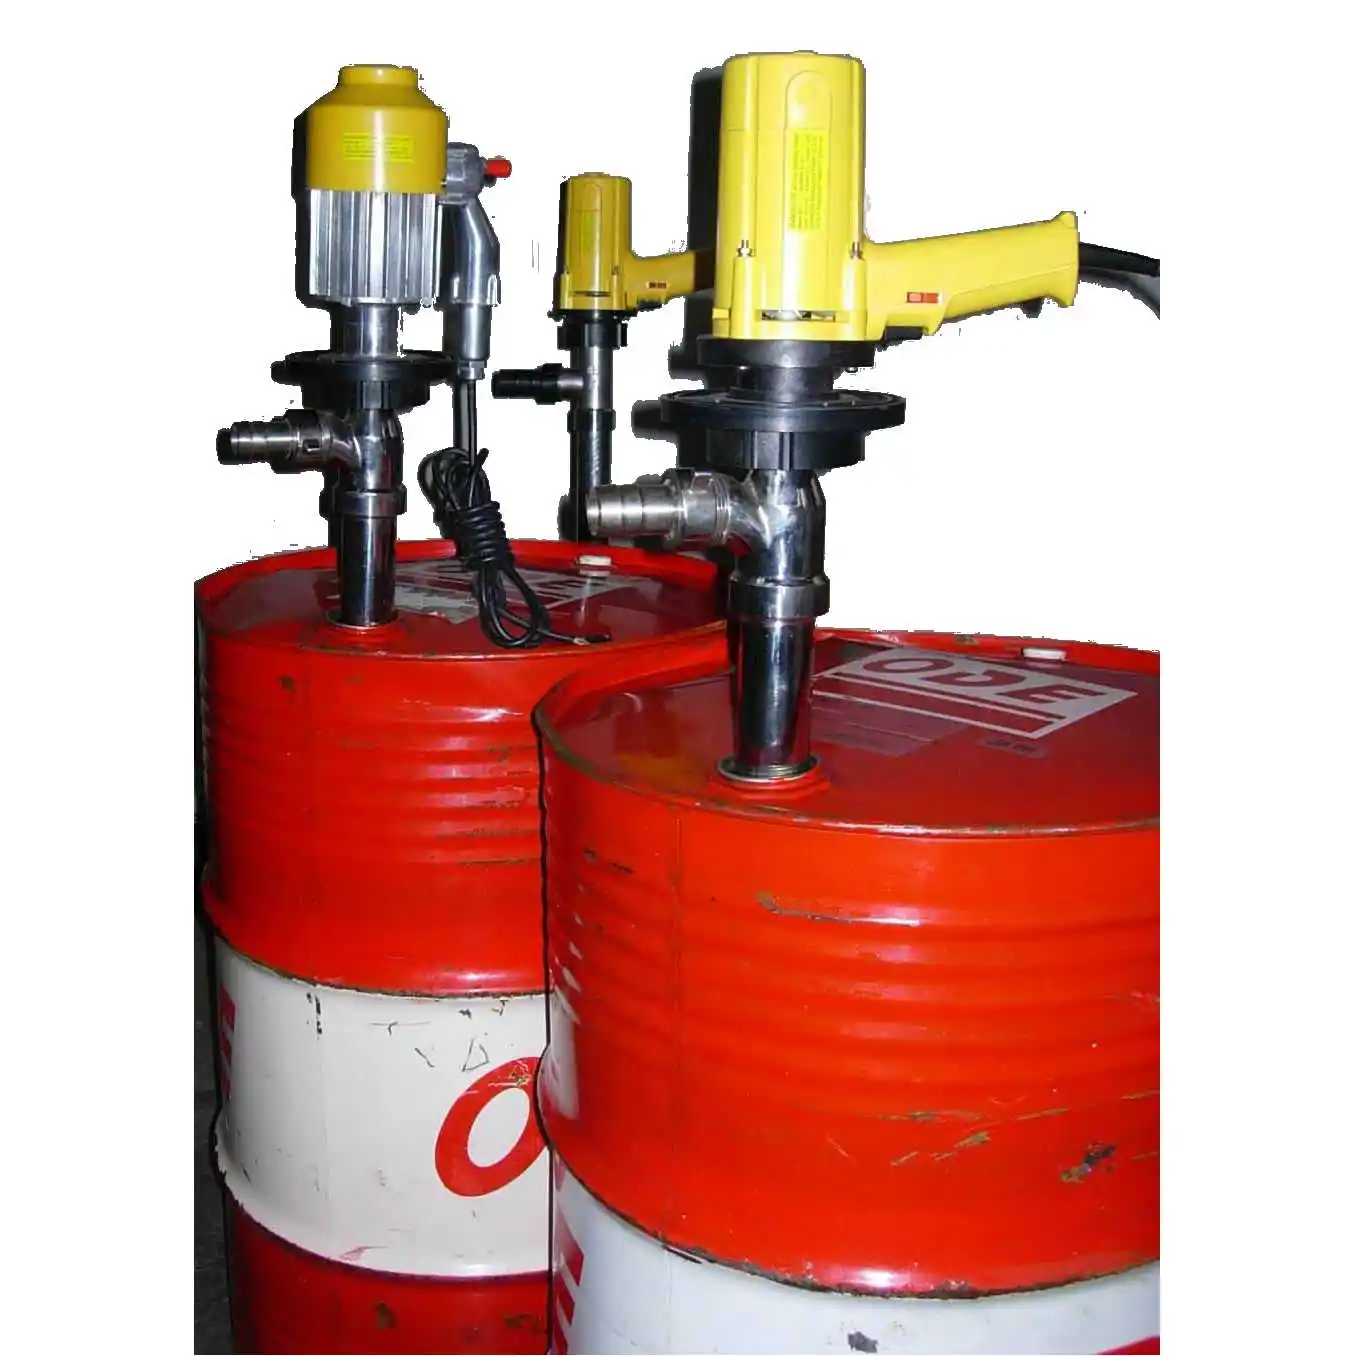 Bomba de tambor de barril químico eléctrico HD, 220V, para aceite diésel, bebida, líquido corrosivo General, gasolina